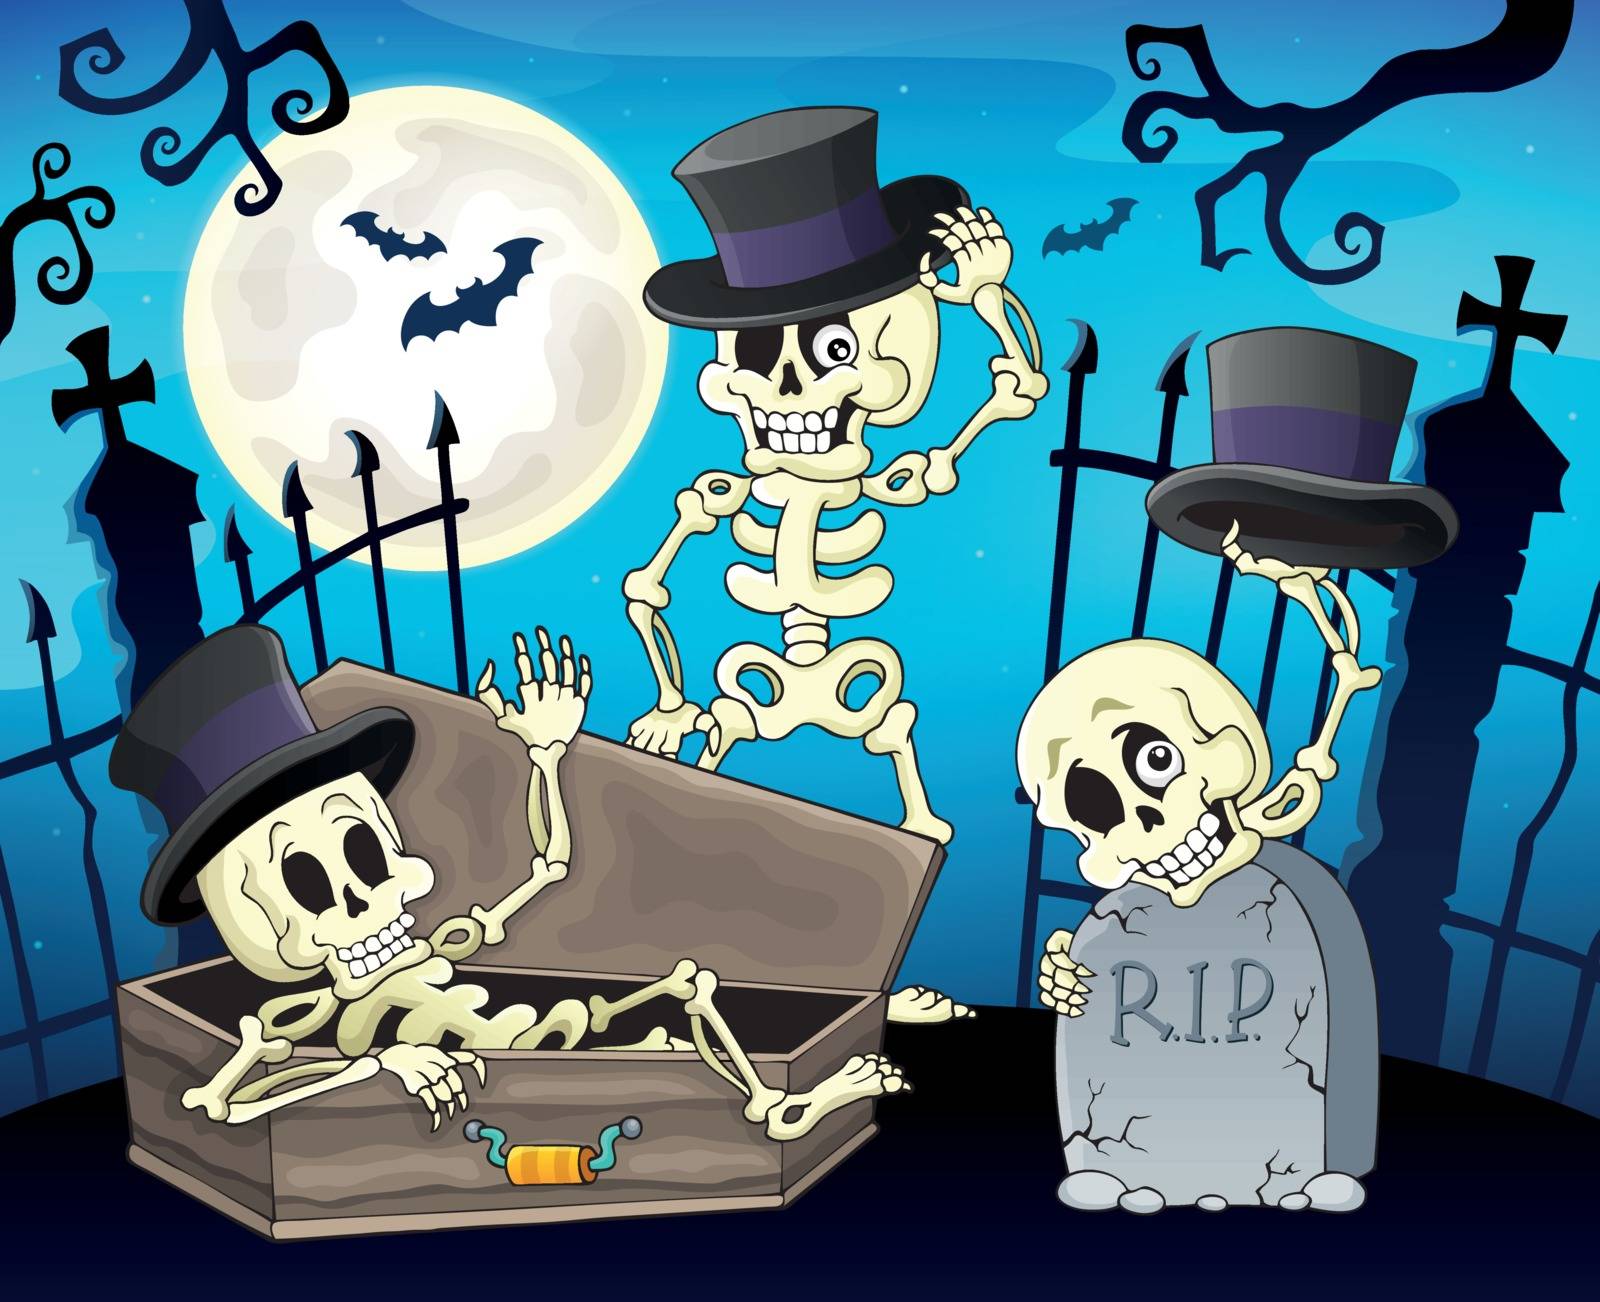 Skeletons near cemetery gate - eps10 vector illustration.